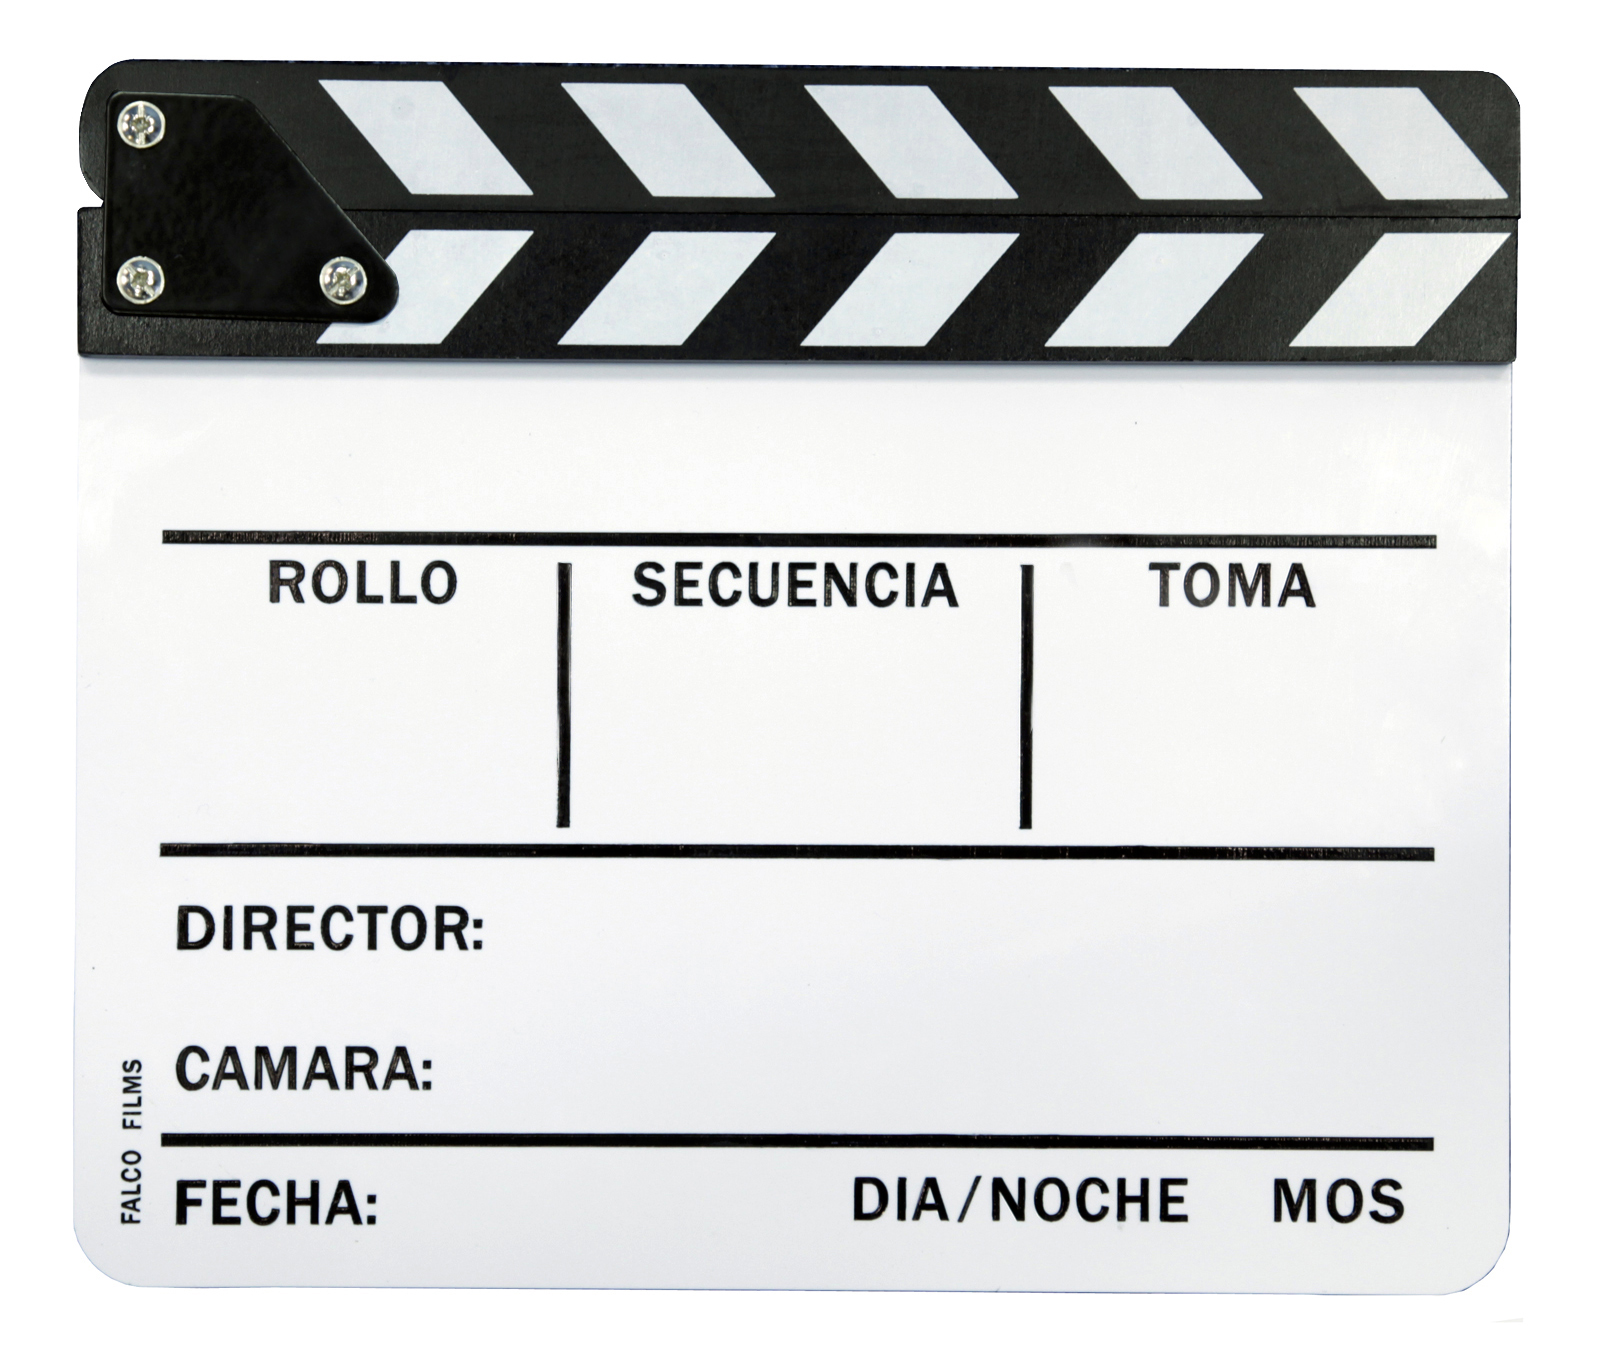 Claqueta sintetica blanco y negro :: Falcofilms :: Product sheet